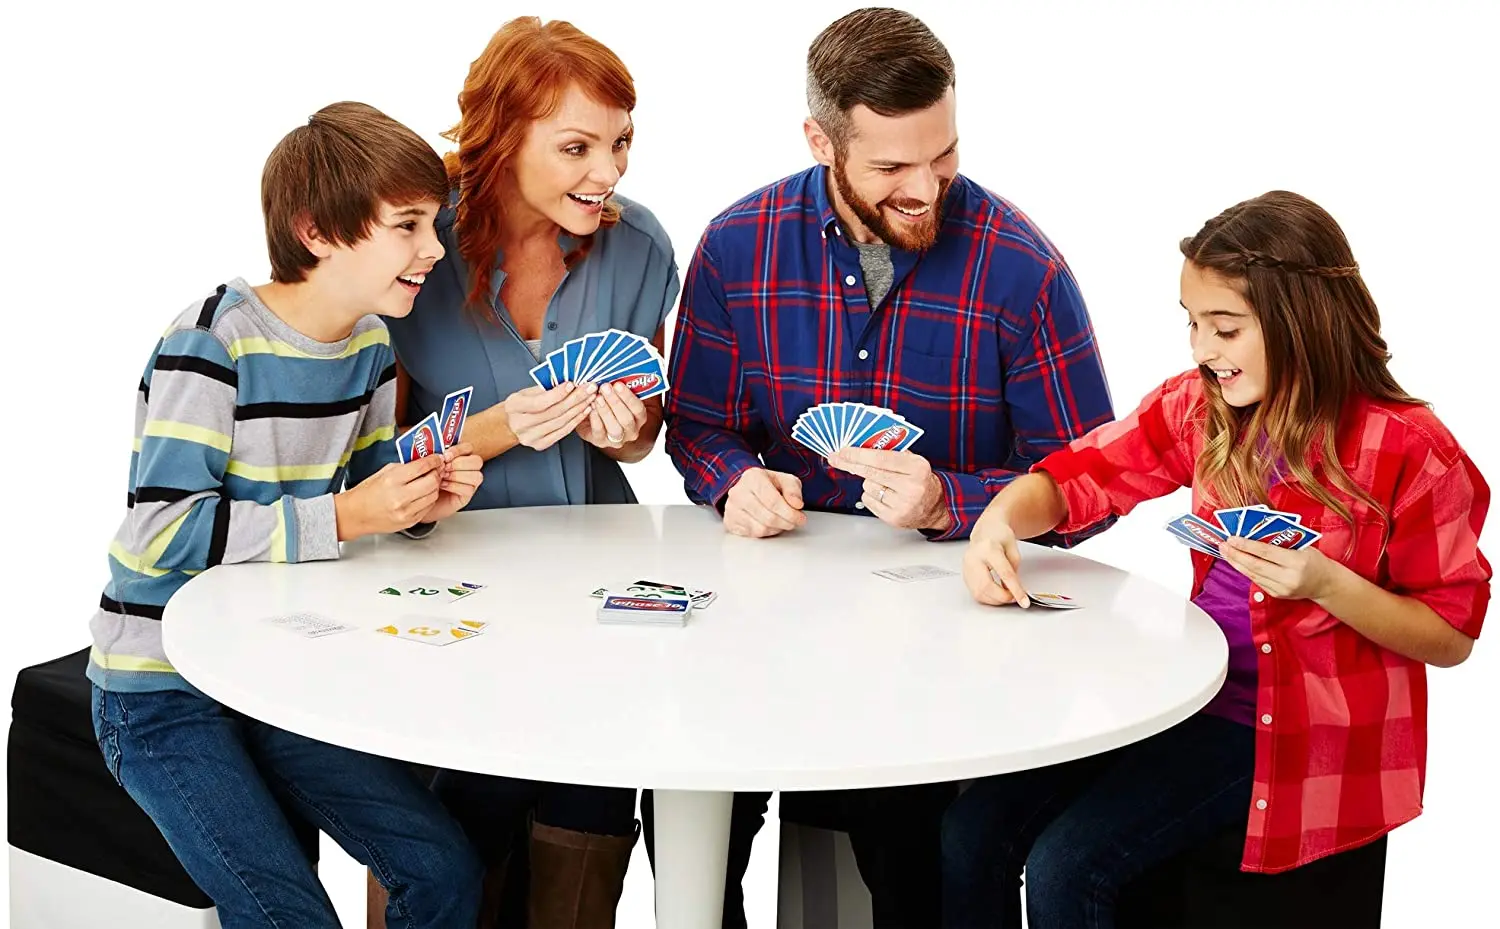 Mattel jogos uno: flip! (Caixa de lata) jogo de cartas família engraçado  jogo multiplayer divertido poker crianças brinquedos jogando cartas -  AliExpress